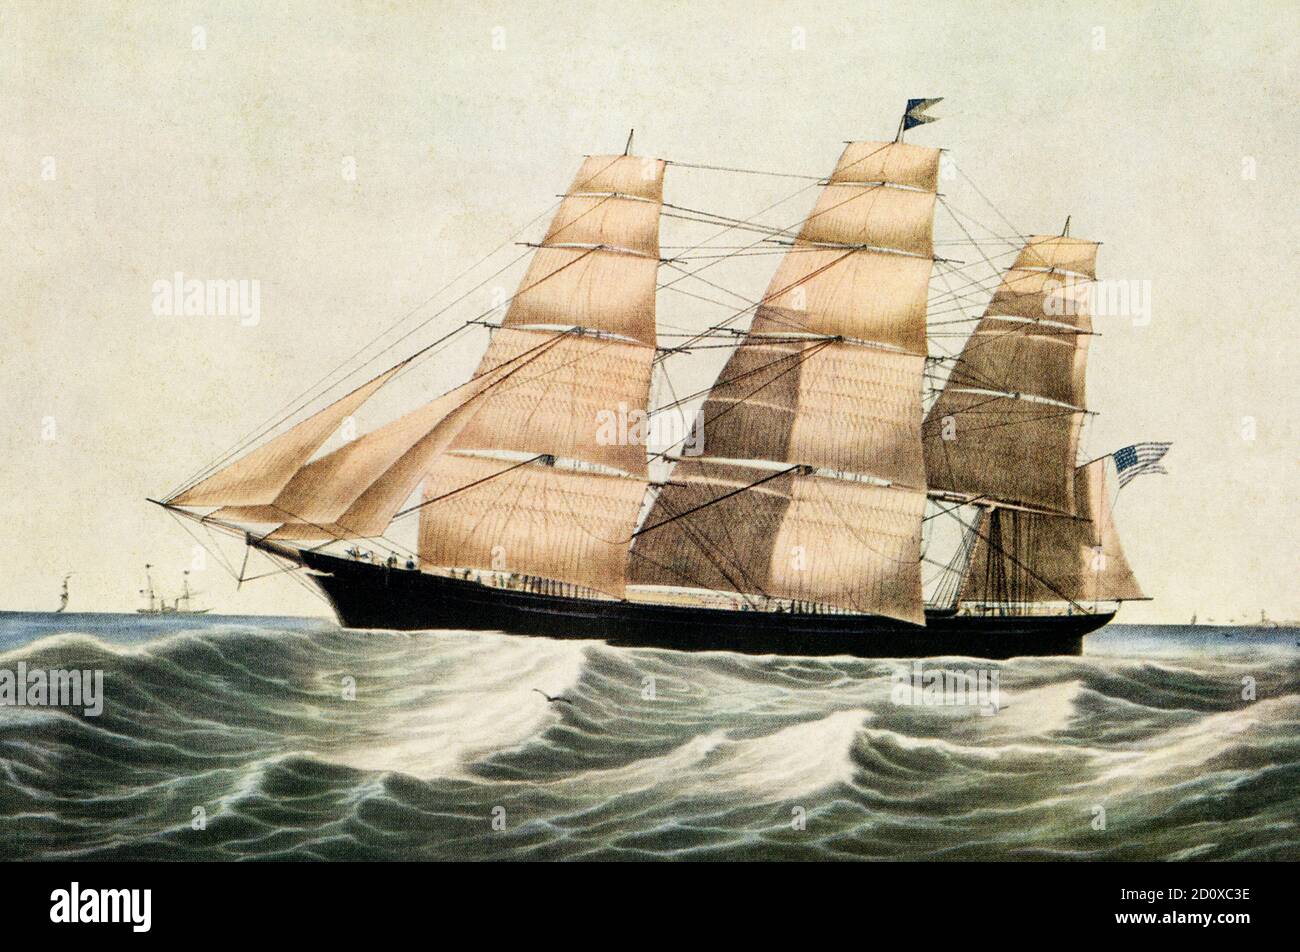 Clipper Ship 'Sovereign of the Seas' E Brown Jr del N Currier 1852. Sovereign of the Seas, ein 1852 gebautes Klipper-Schiff, war ein Segelschiff, das mit 22 Knoten den Weltrekord für das schnellste Segelschiff aufgestellt hat. Stockfoto